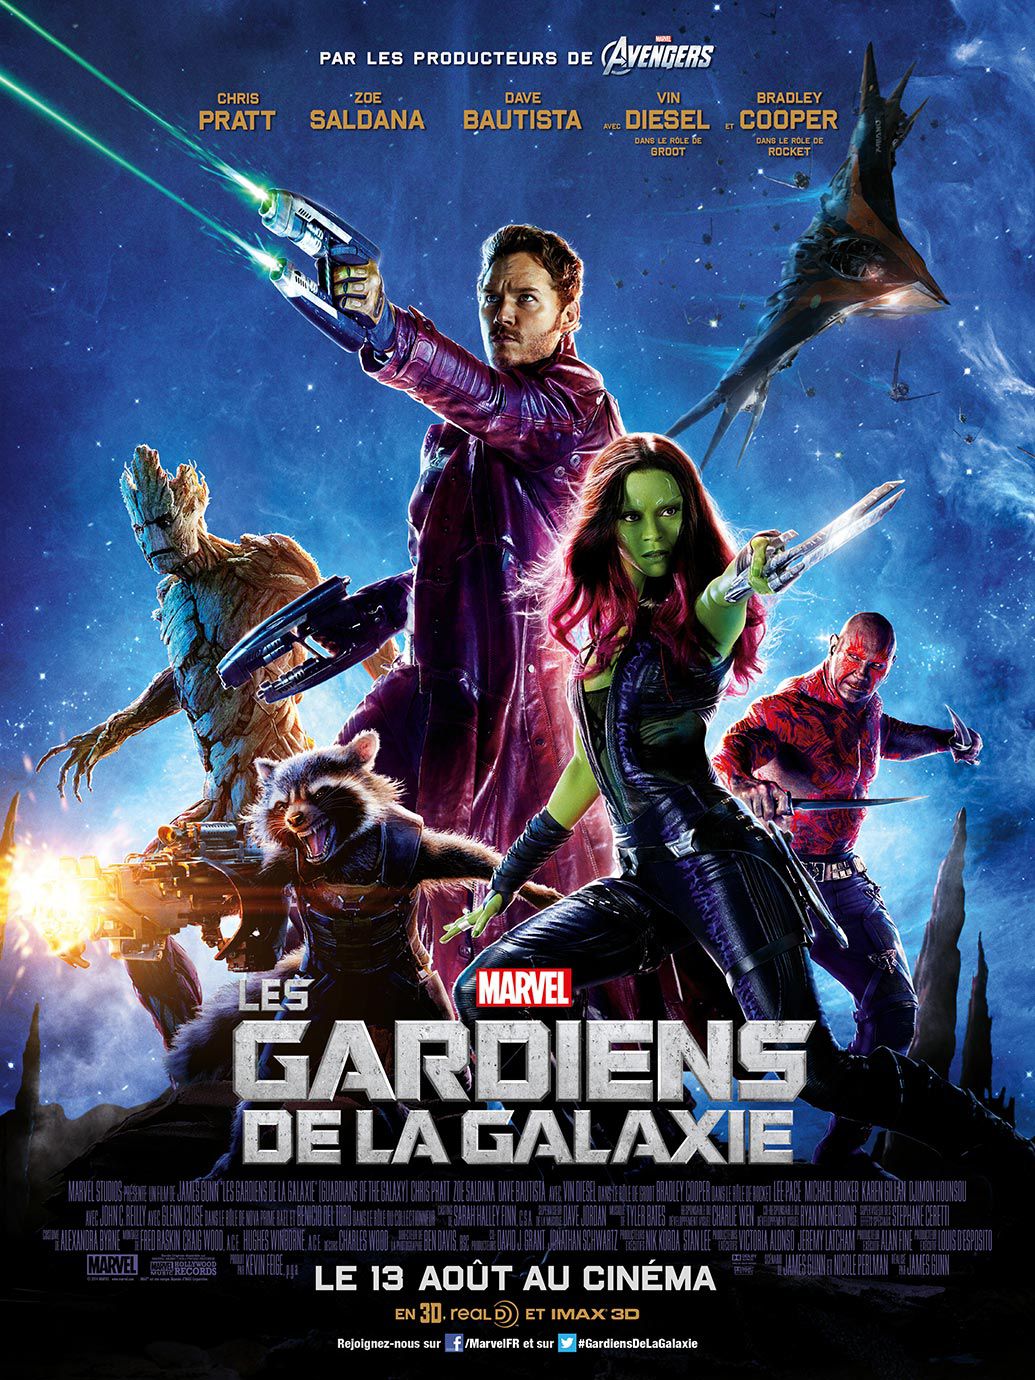 Les Gardiens de la galaxie - Film (2014) streaming VF gratuit complet